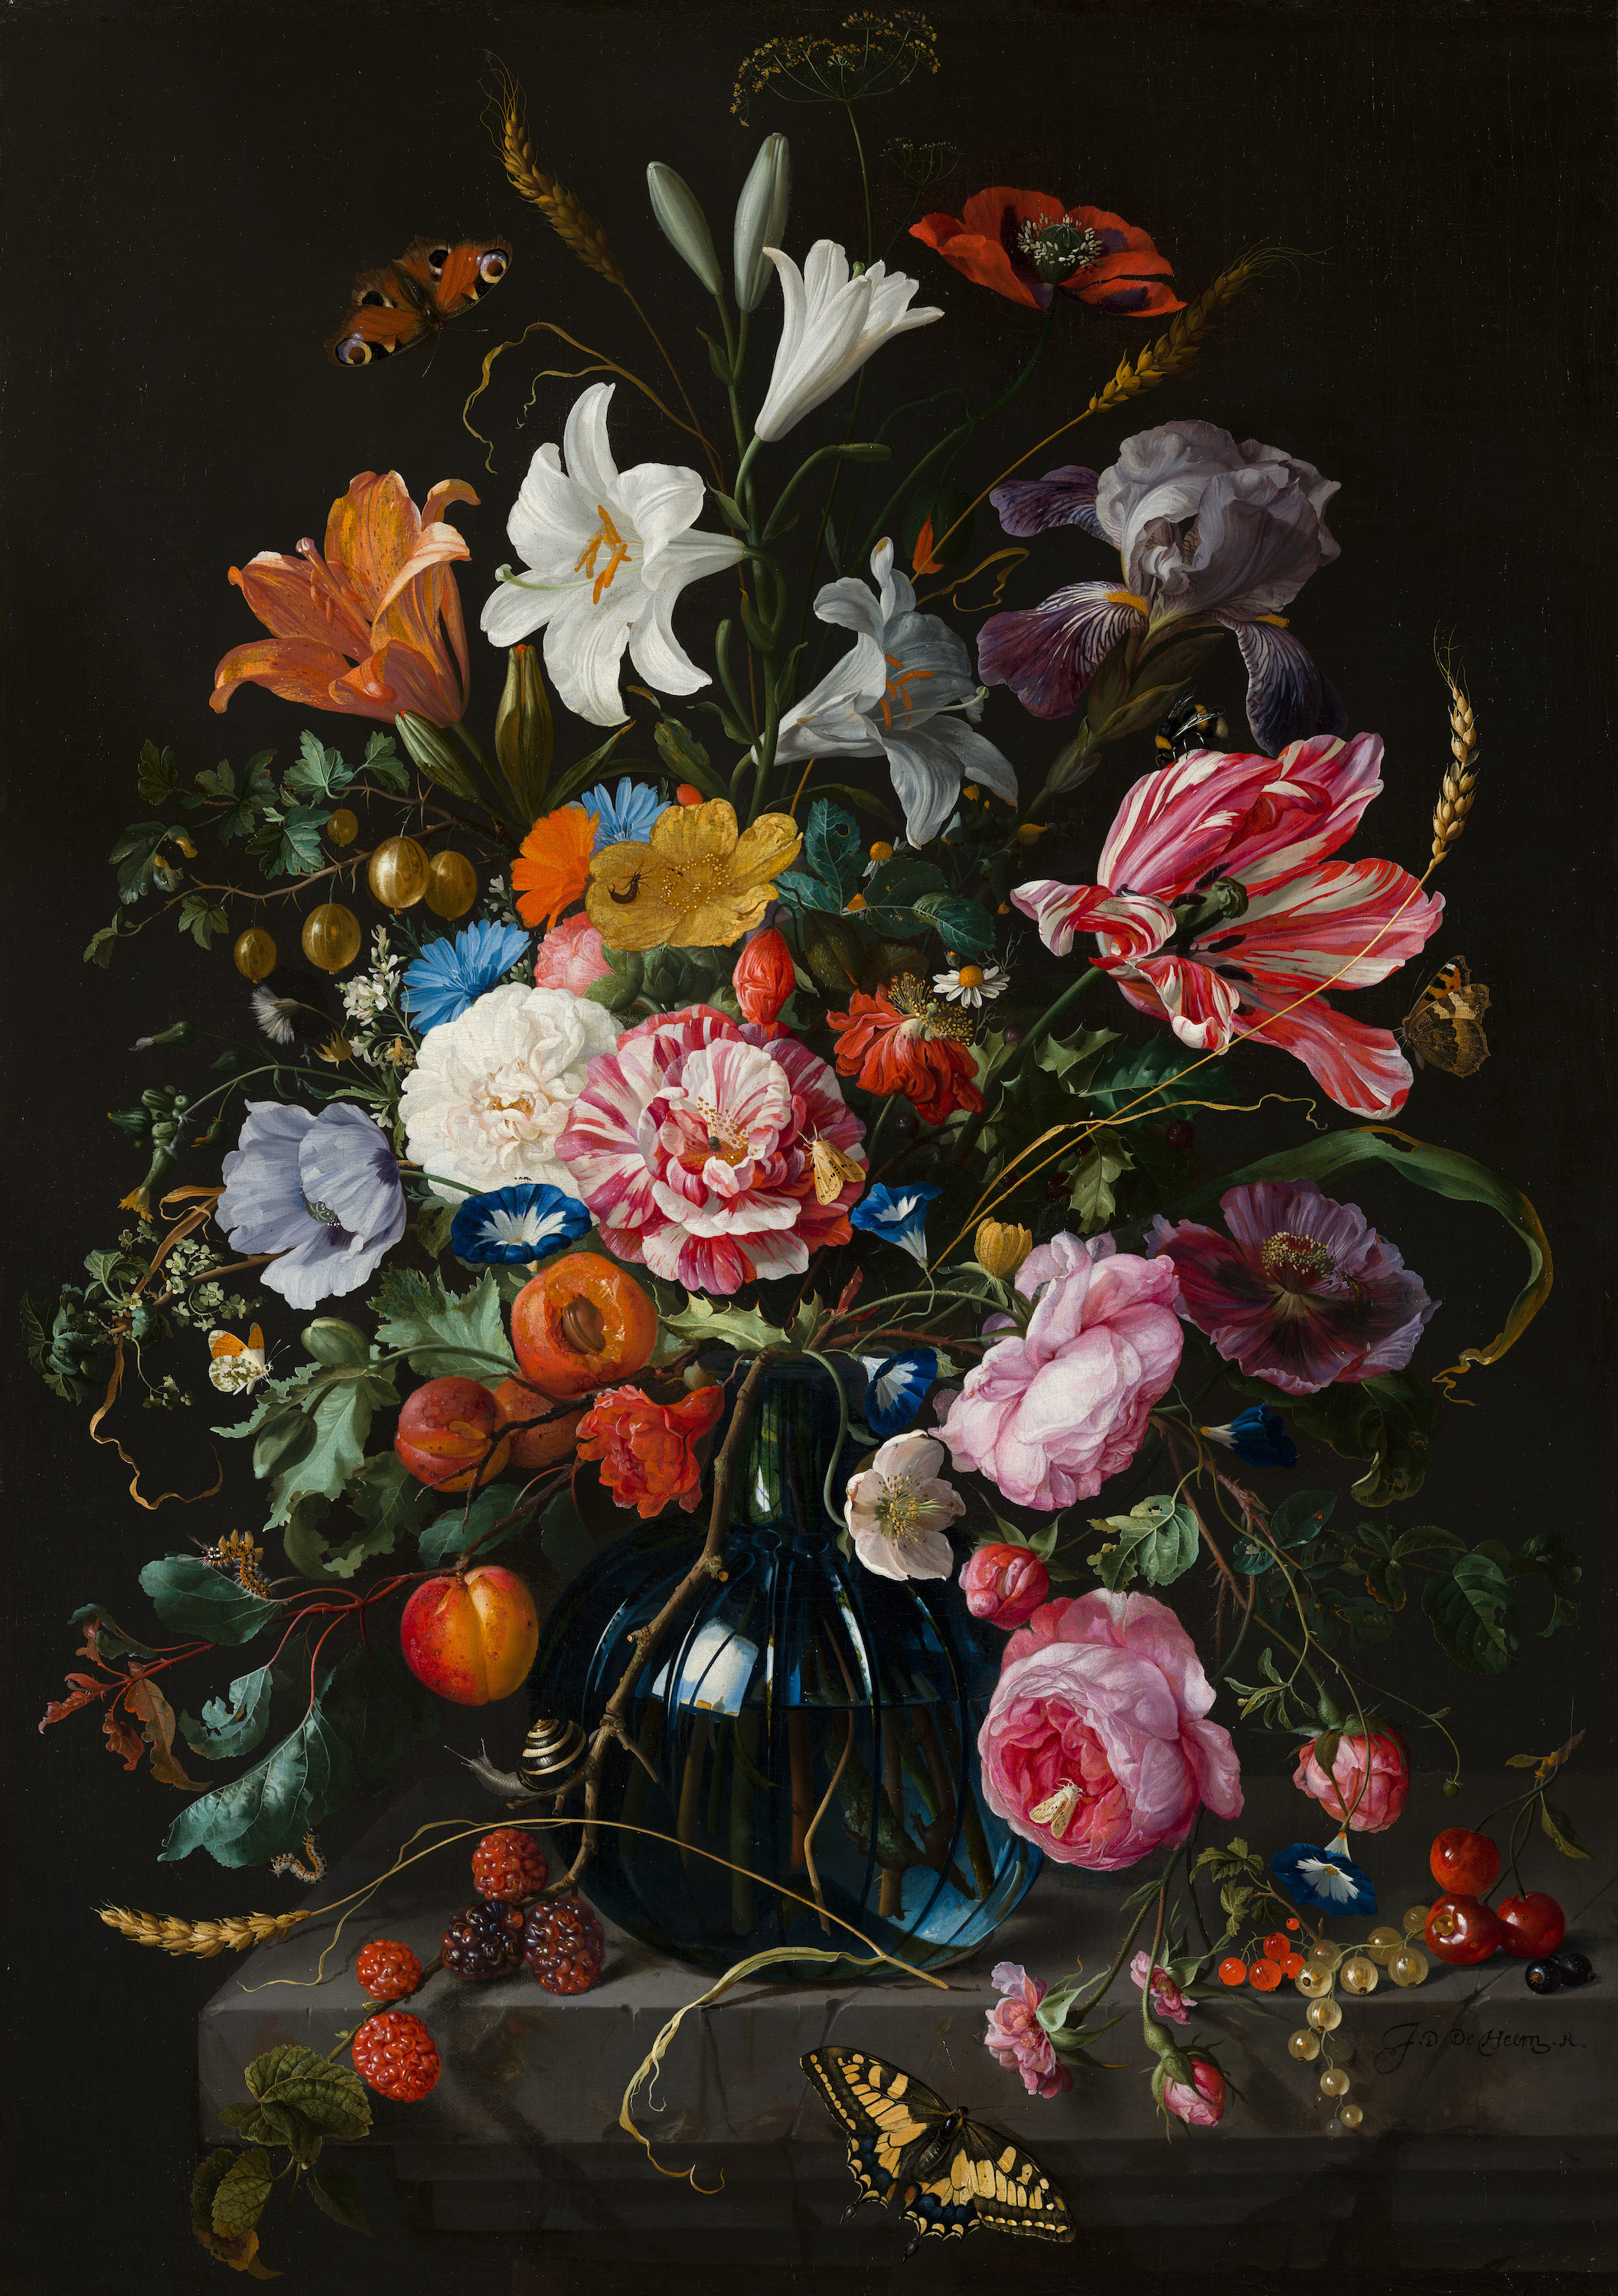 Wazon z kwiatami by Jan Davidsz de Heem - 1670 - 52,6 x 74,2 cm 